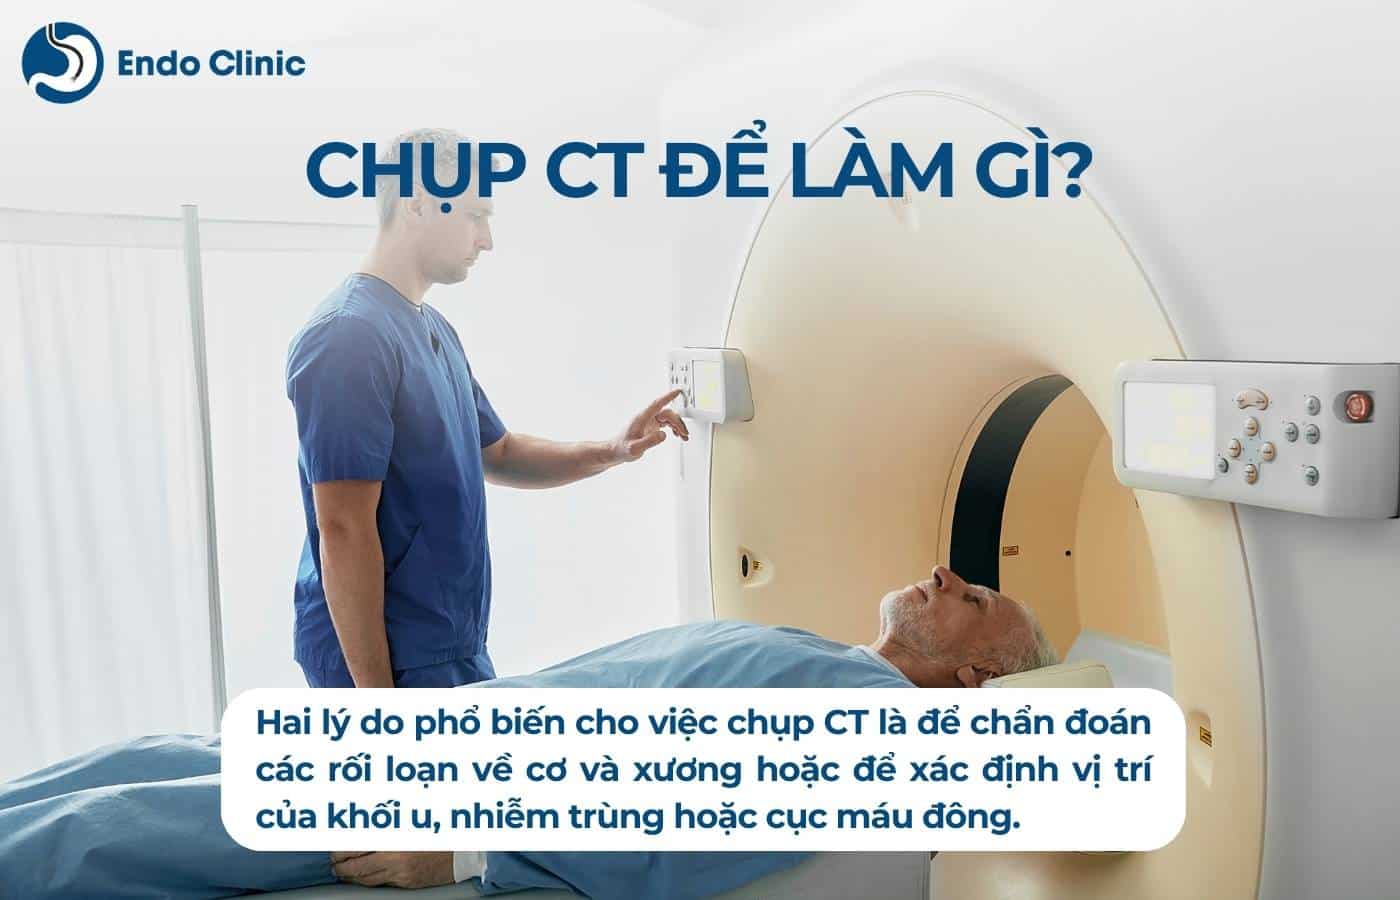 Chụp CT để làm gì?